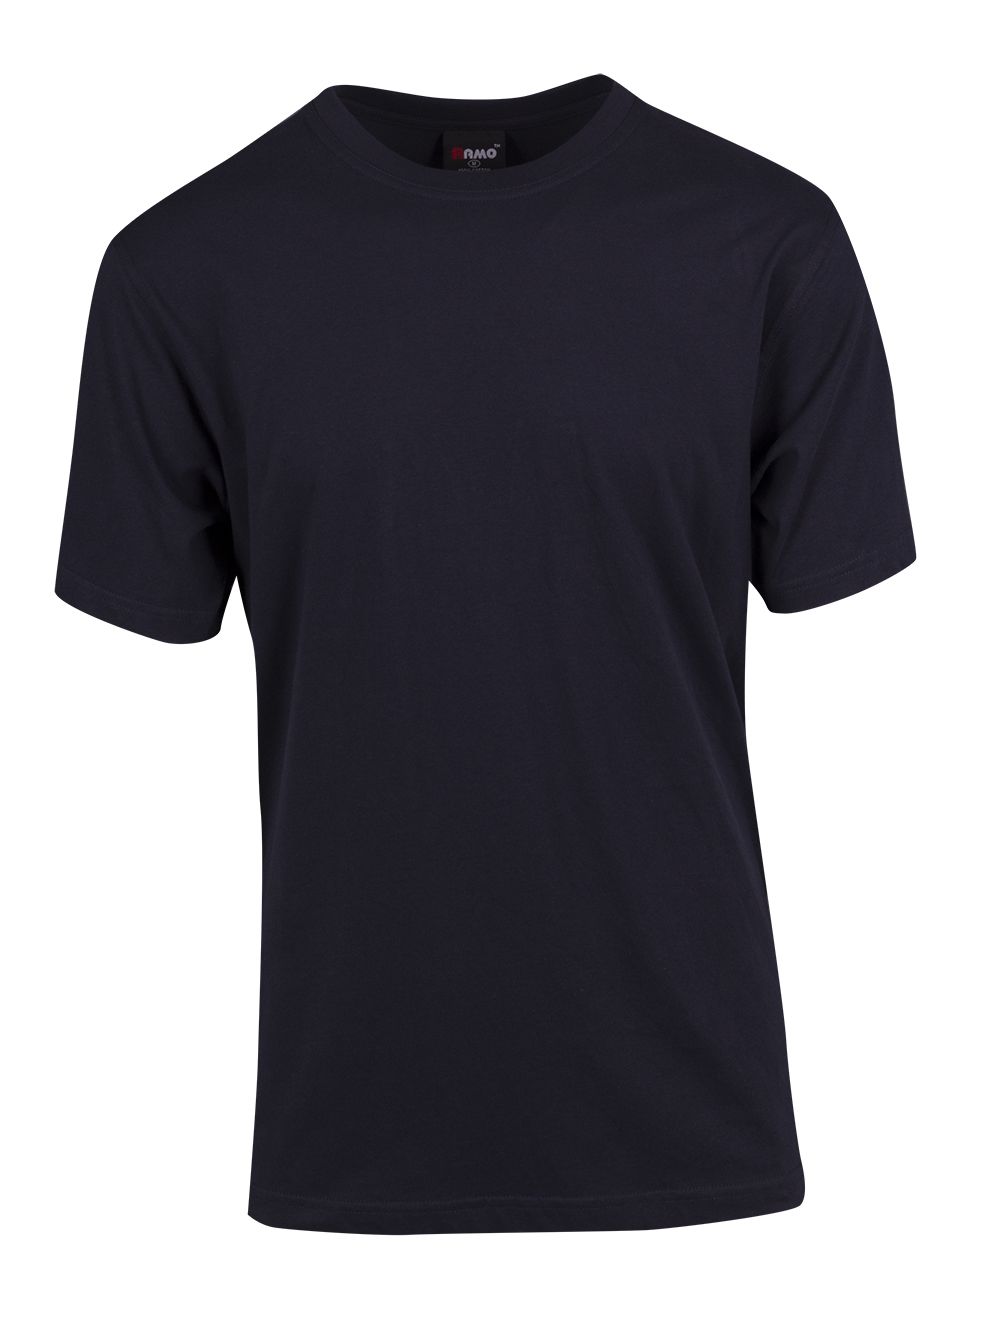 Unisex Modern Fit T-shirt 4XL - 5XL